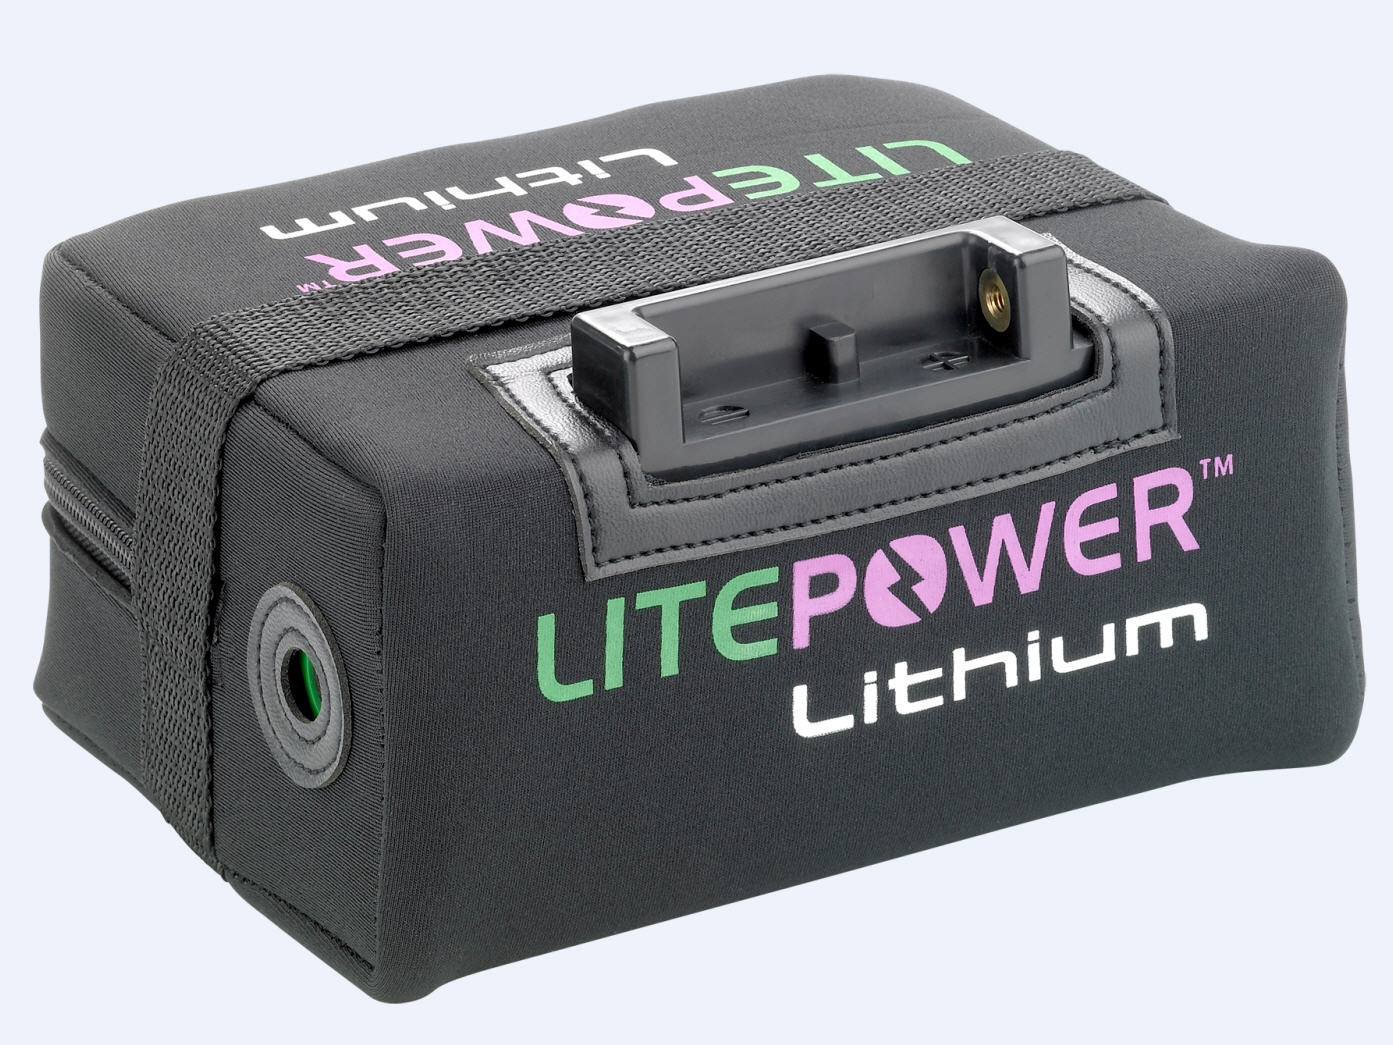 Litepower